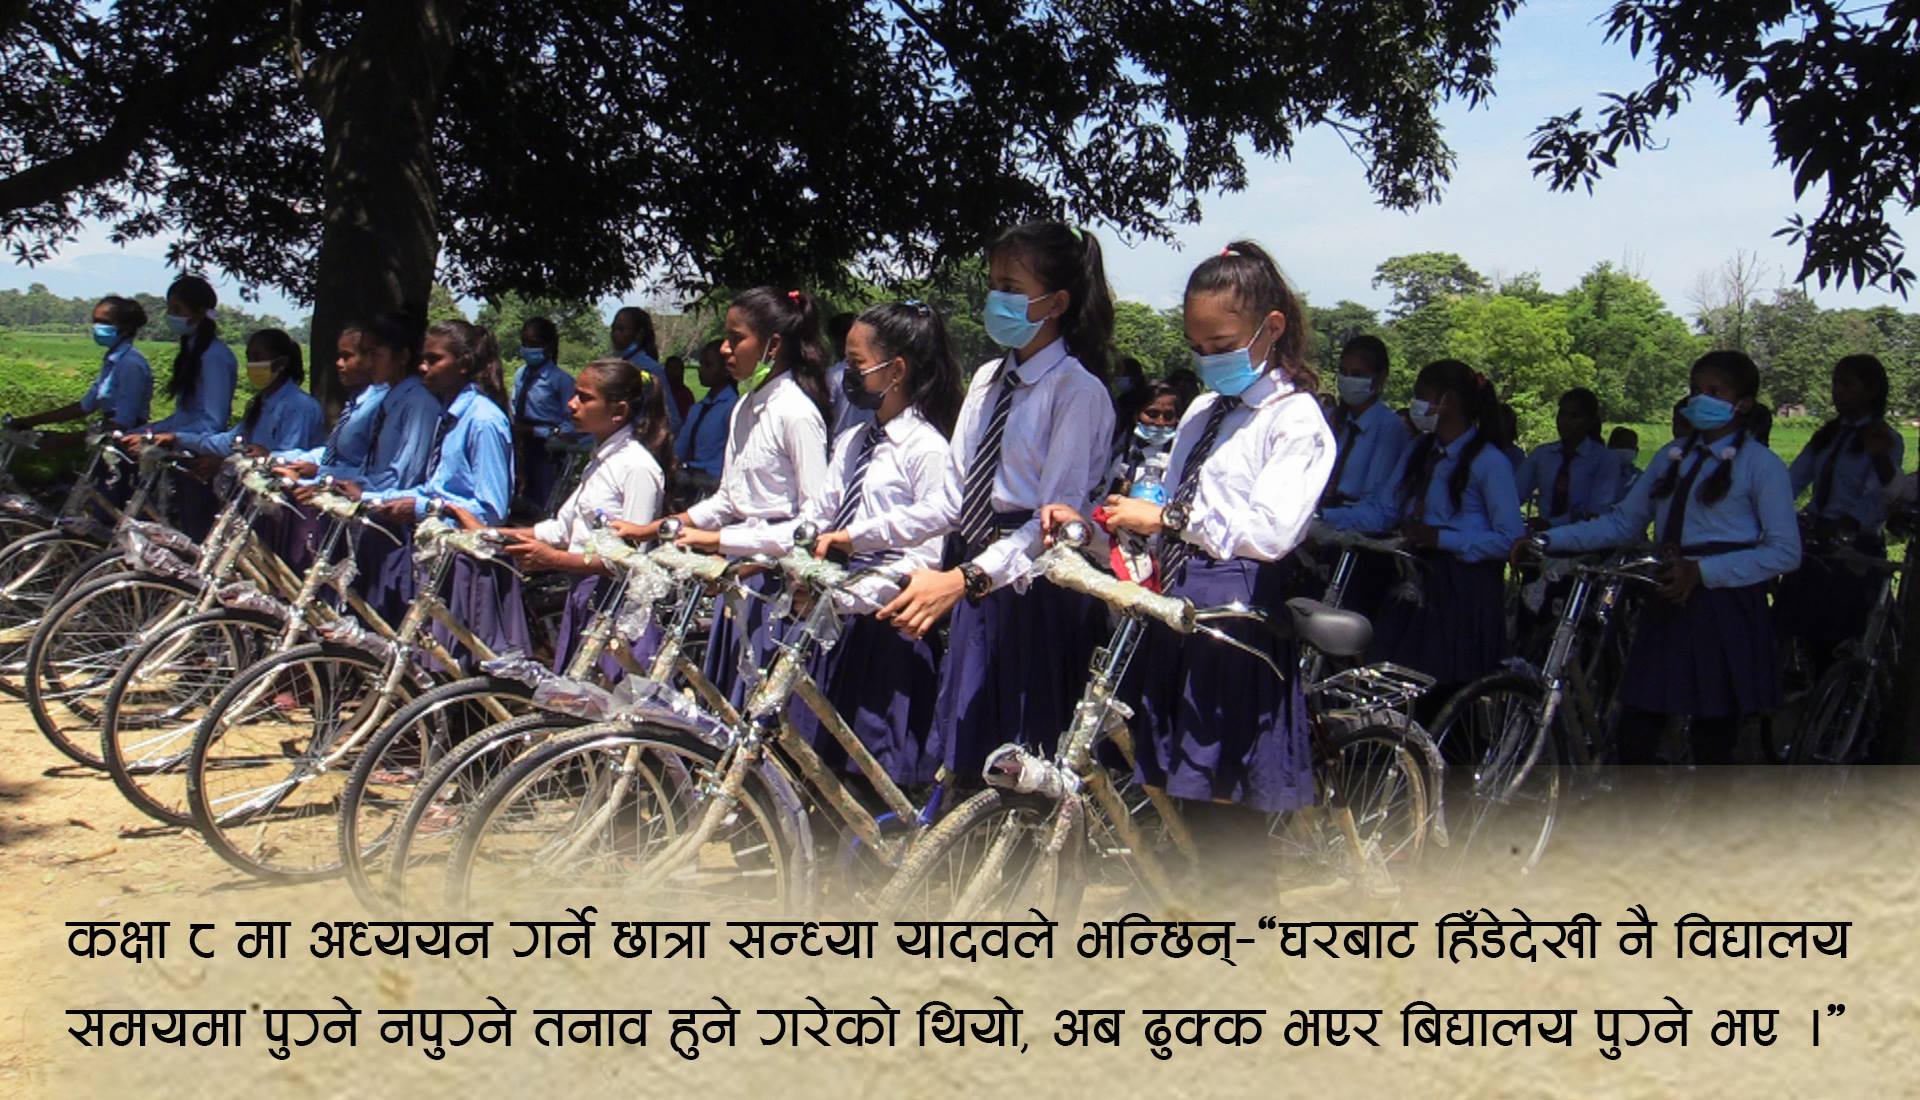 गैडहवामा ५१ छात्रालाई साईकल, शिक्षाप्रति छात्राहरुको आकर्षण बढ्ने अपेक्षा